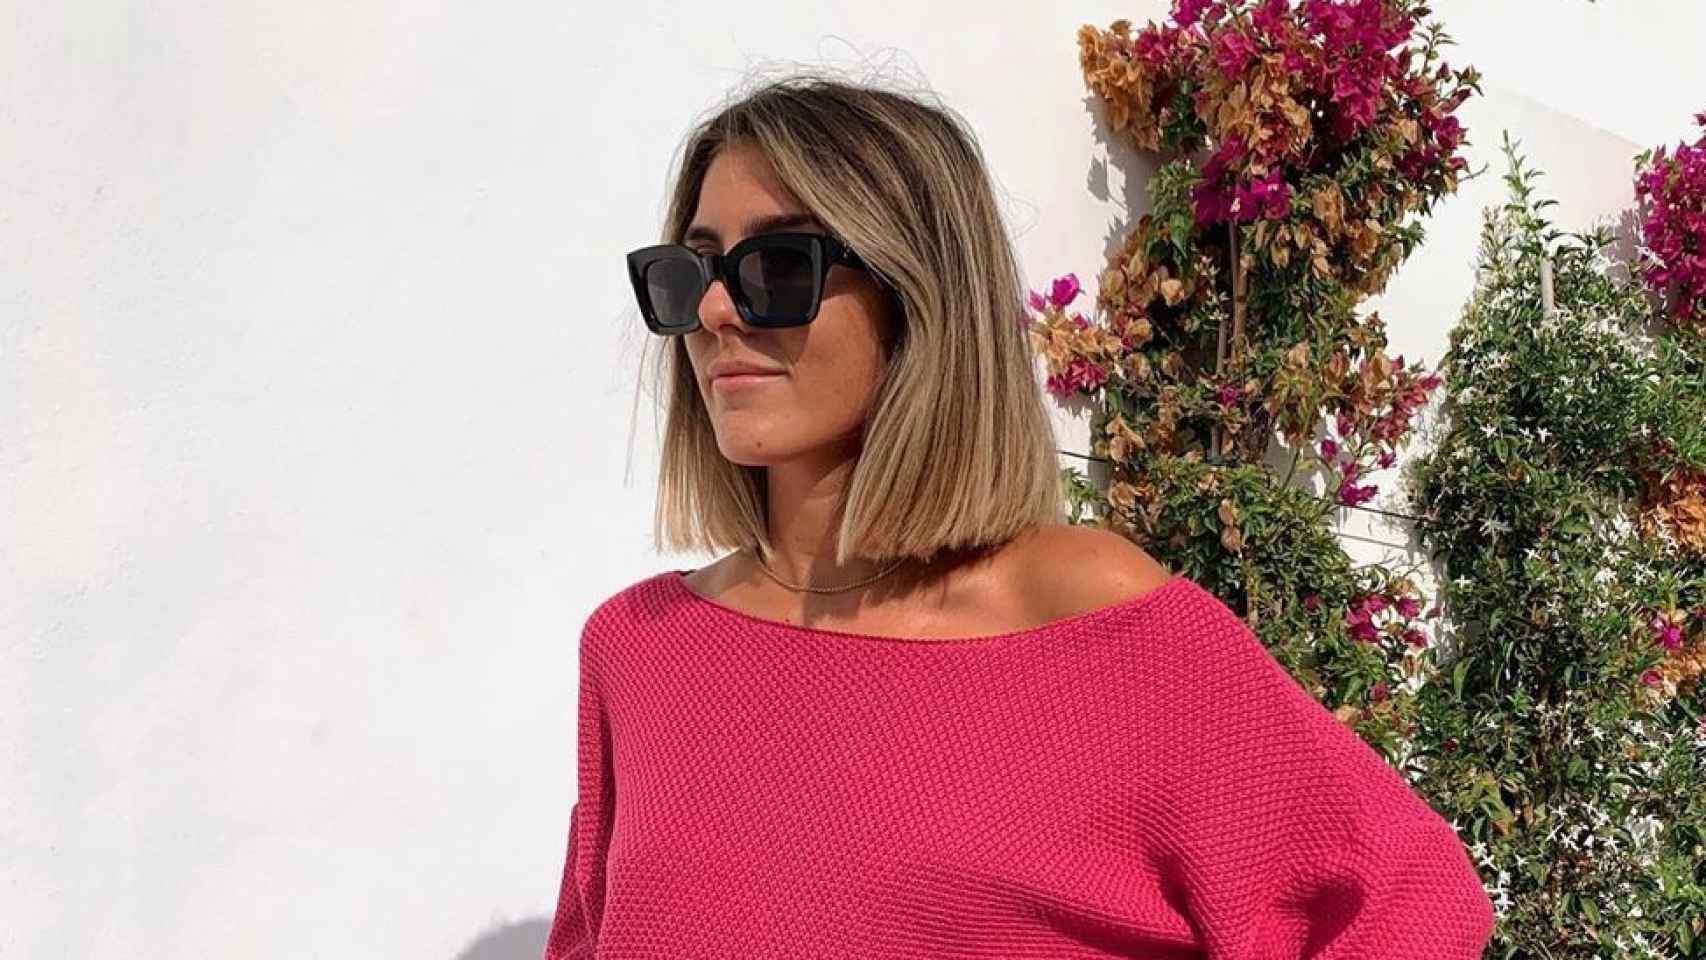 Anna Ferrer tiene el 'total look' perfecto para despedirse del verano y comenzar la rutina